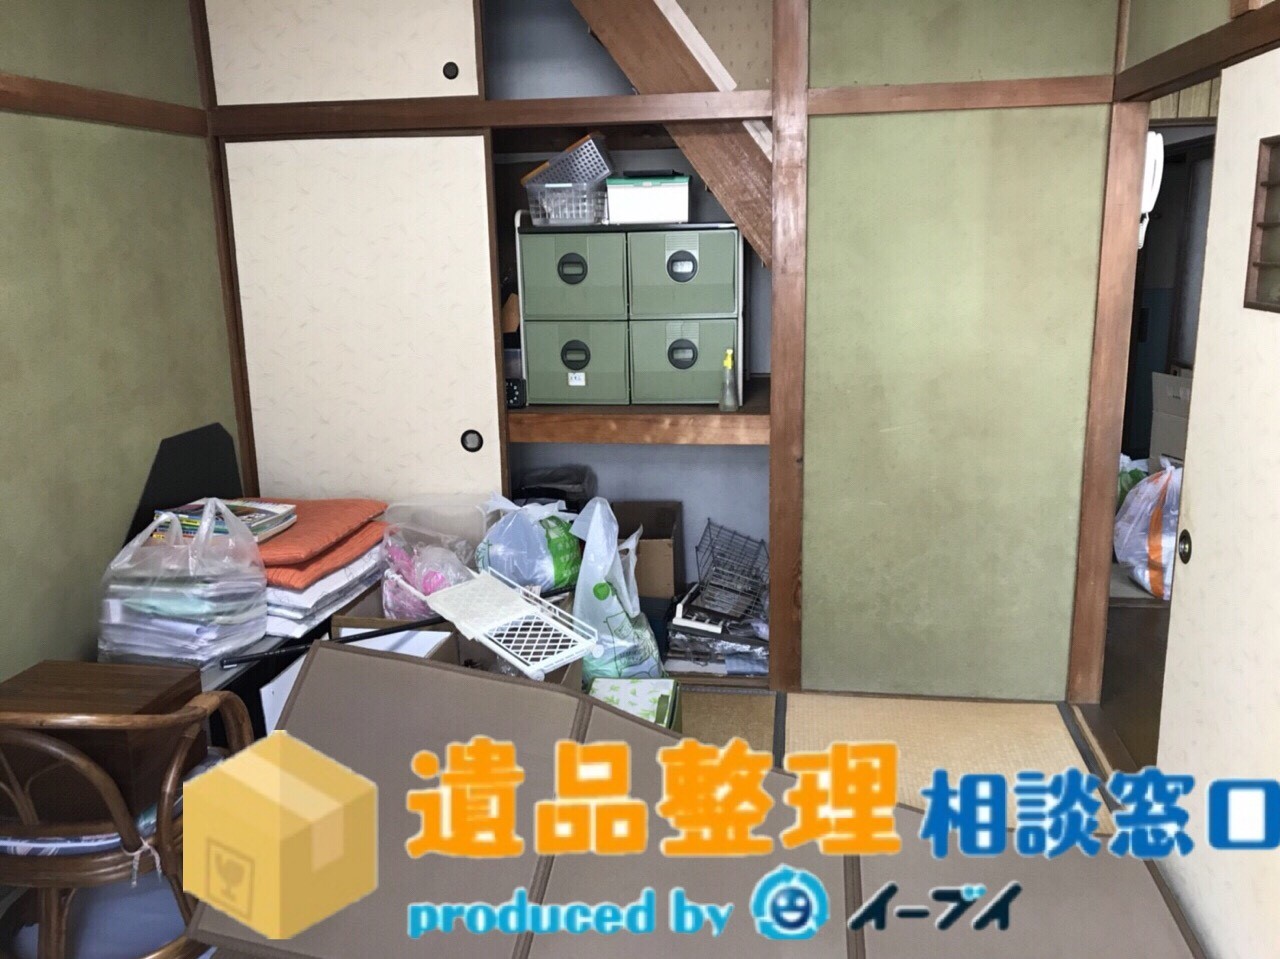 兵庫県西宮市で遺品整理に伴う家財道具のご依頼を頂きました。のアイキャッチ